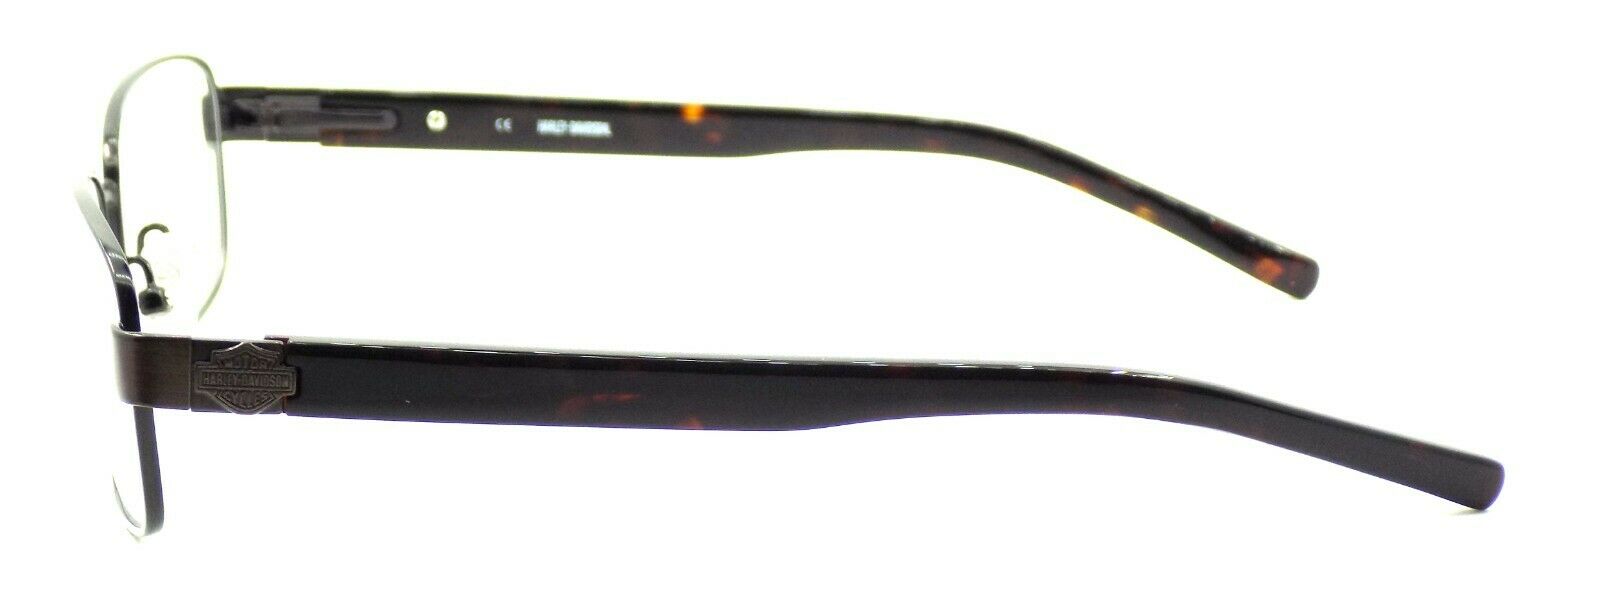 3-Harley Davidson HD328 SBRN Men's Eyeglasses Frames 55-17-140 Satin Brown + CASE-715583259850-IKSpecs